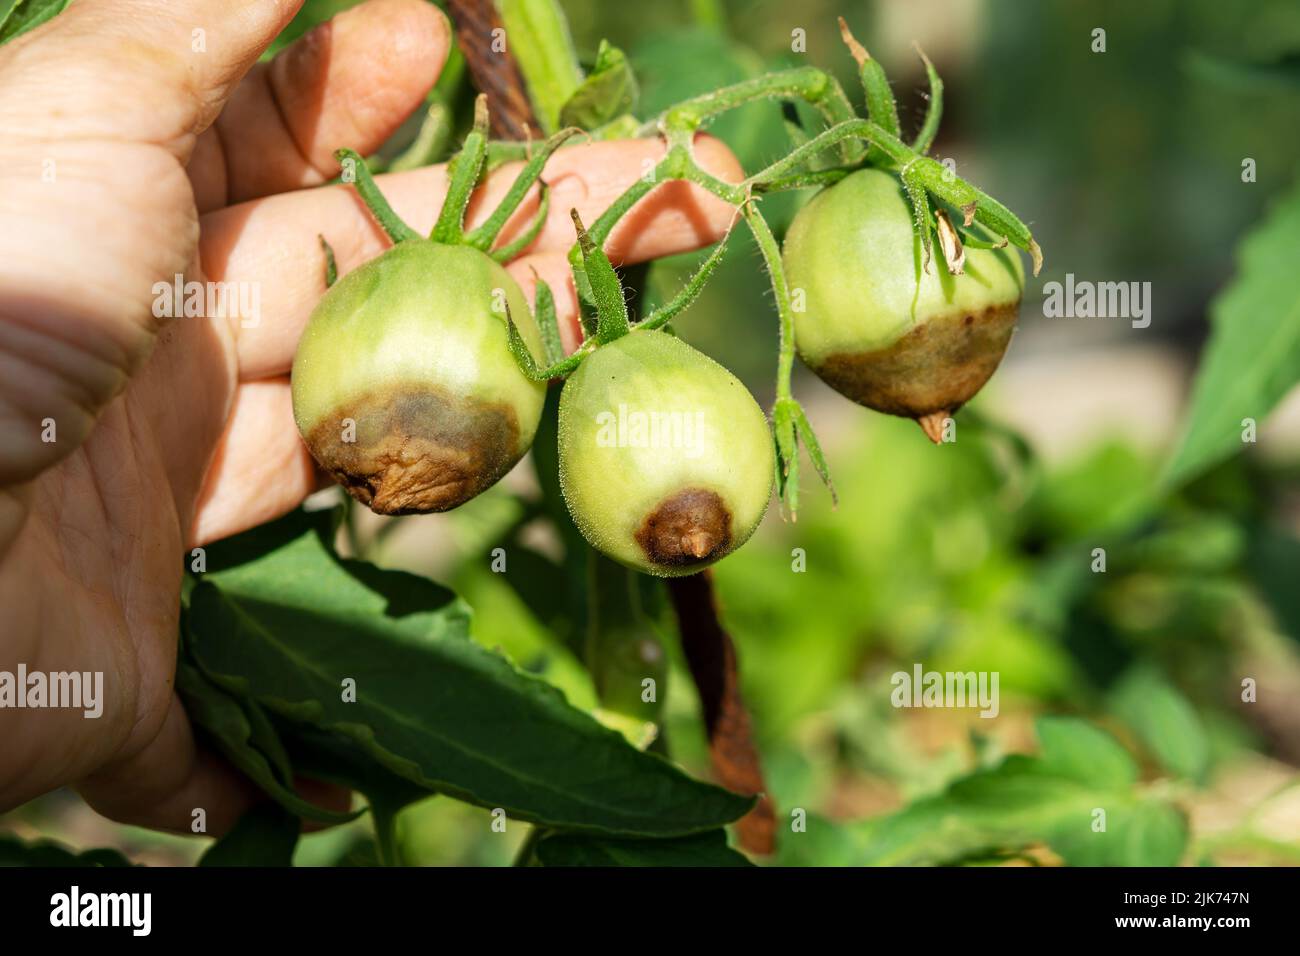 Malattia di pomodoro. Pomodori verdi marcire su un ramo in un giardino rurale in una giornata di sole. I pomodori sono danneggiati e ammalati Foto Stock